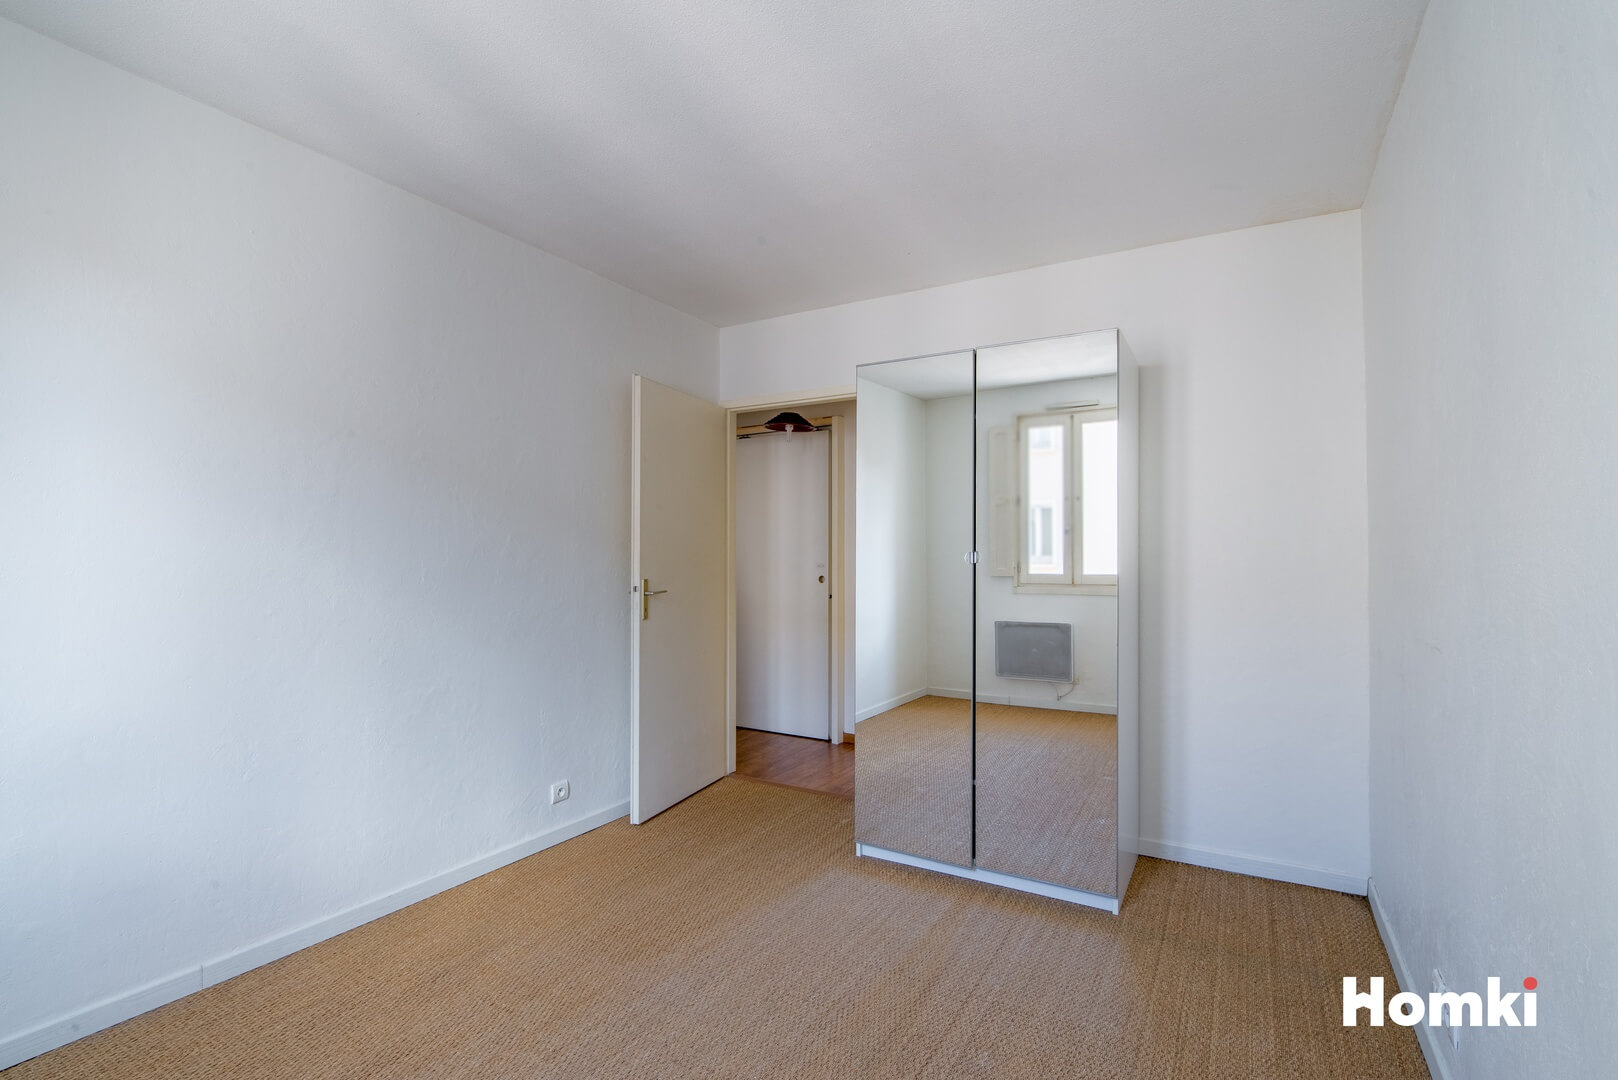 Homki - Vente Appartement  de 61.0 m² à Toulouse 31400